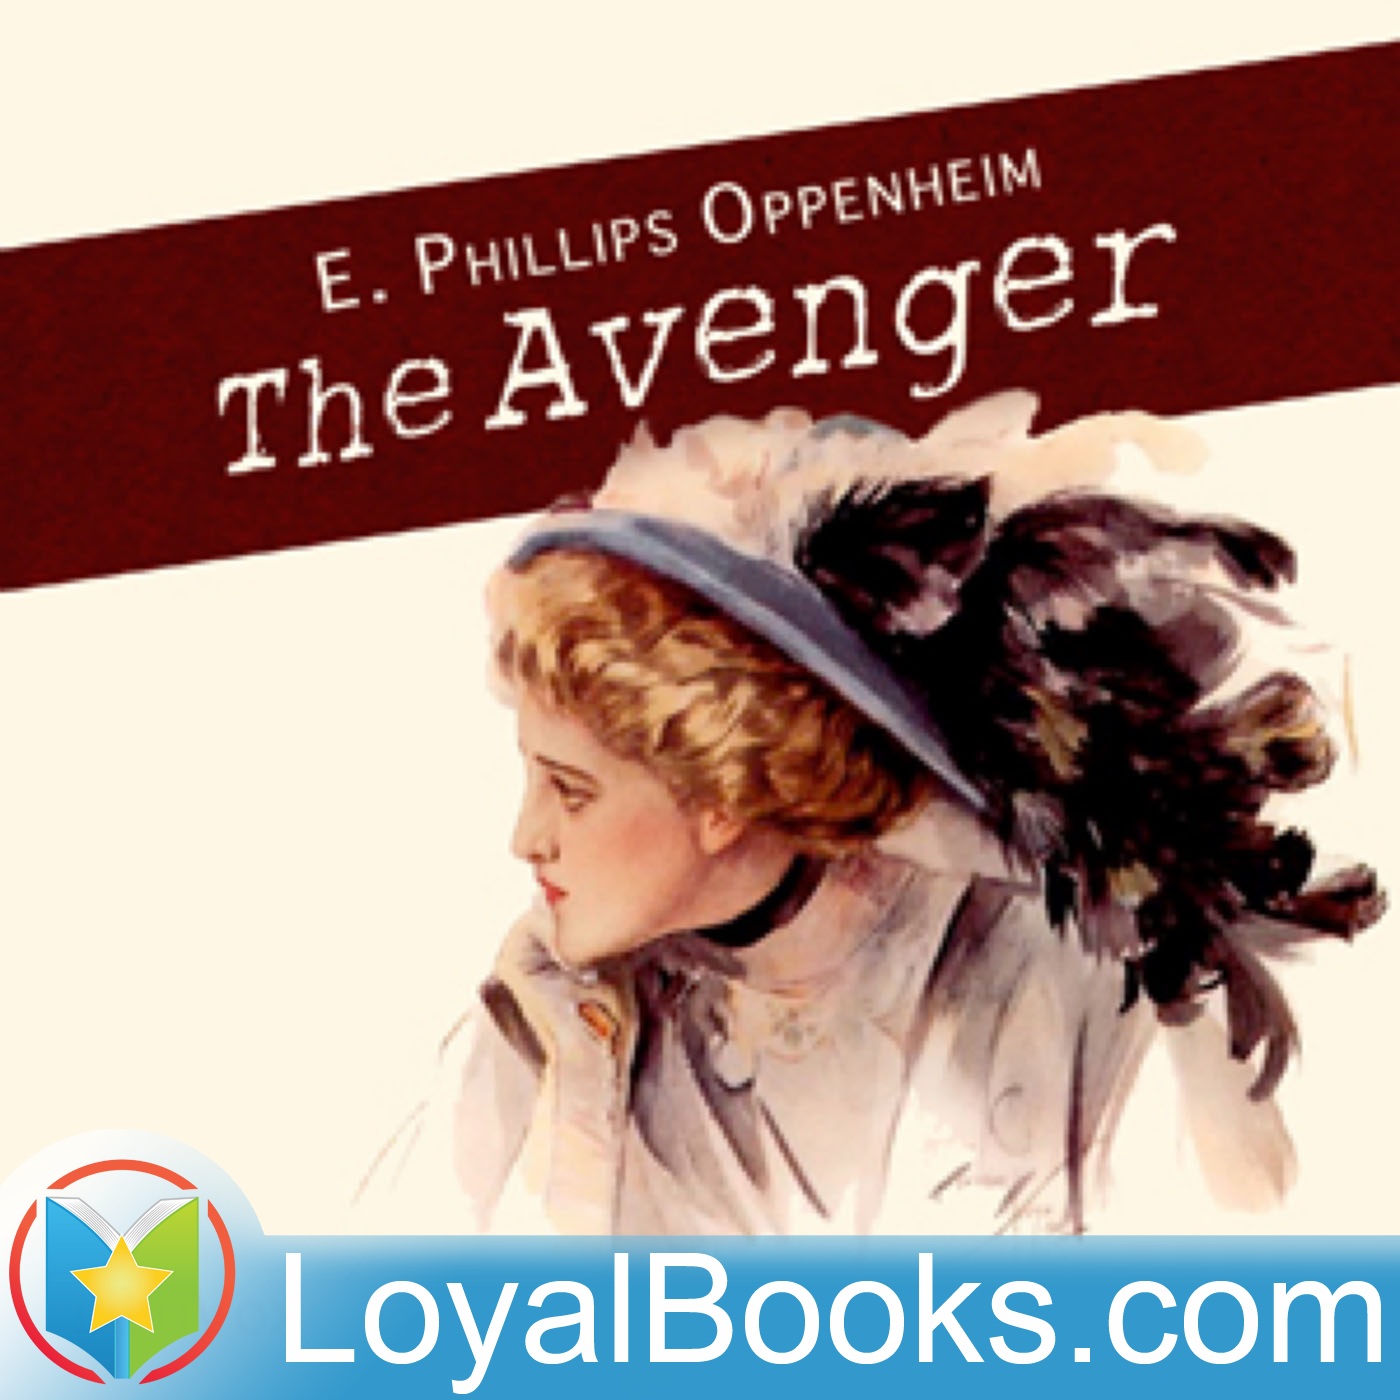 The Avenger by Edward Phillips Oppenheim